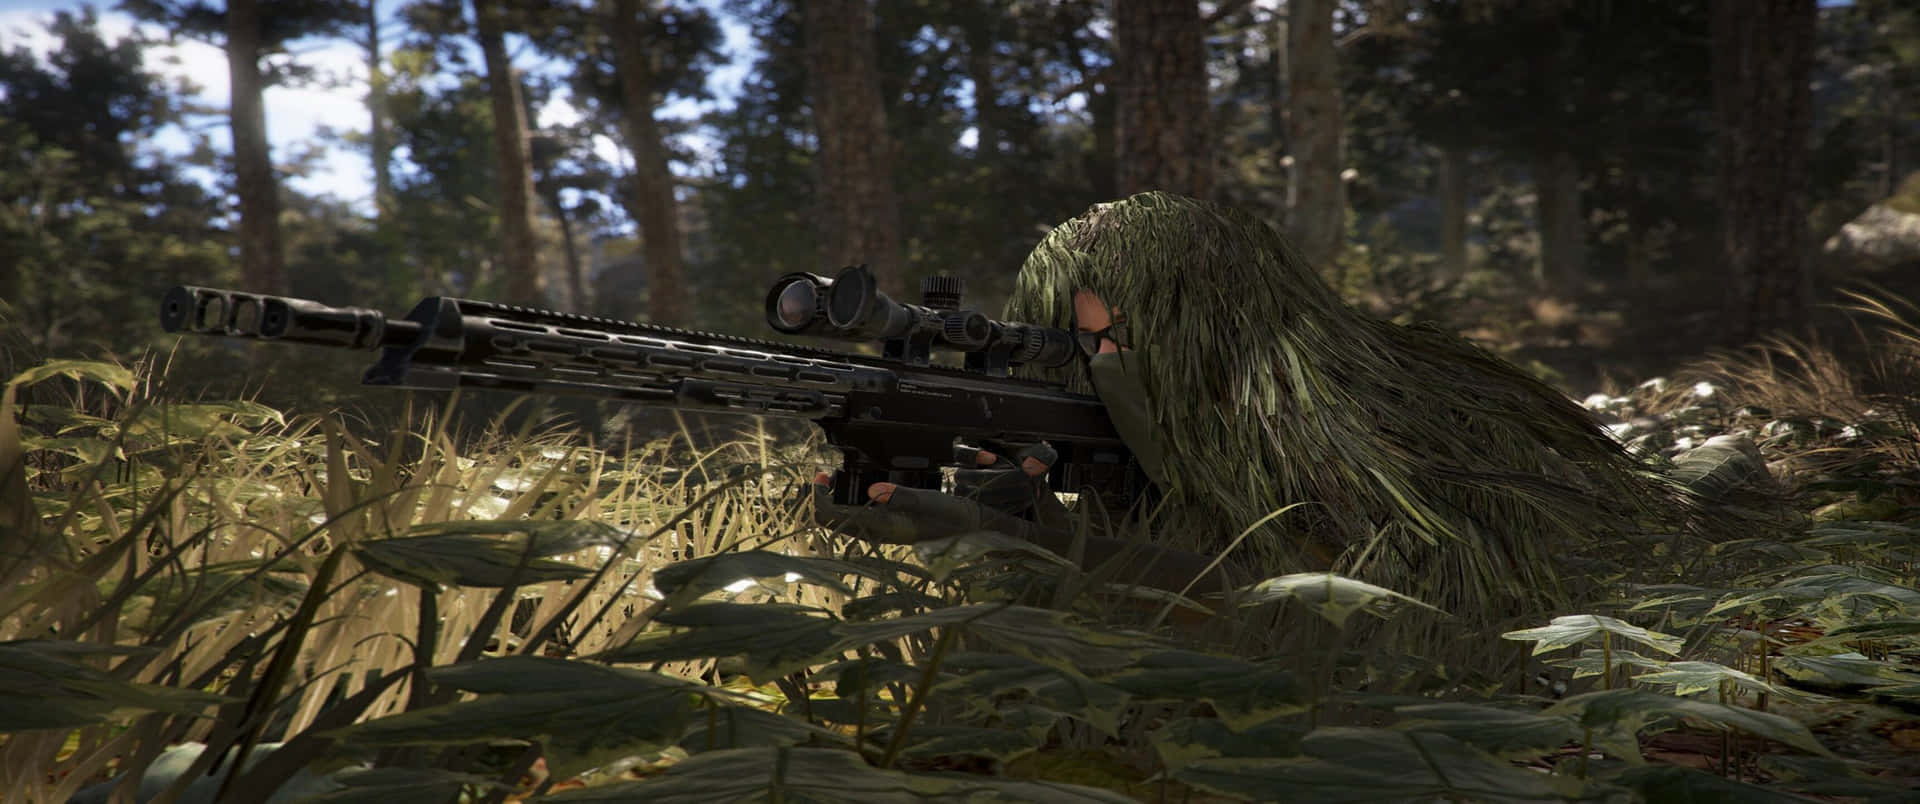 Unhombre Camuflado Está Disparando Un Rifle En El Bosque.